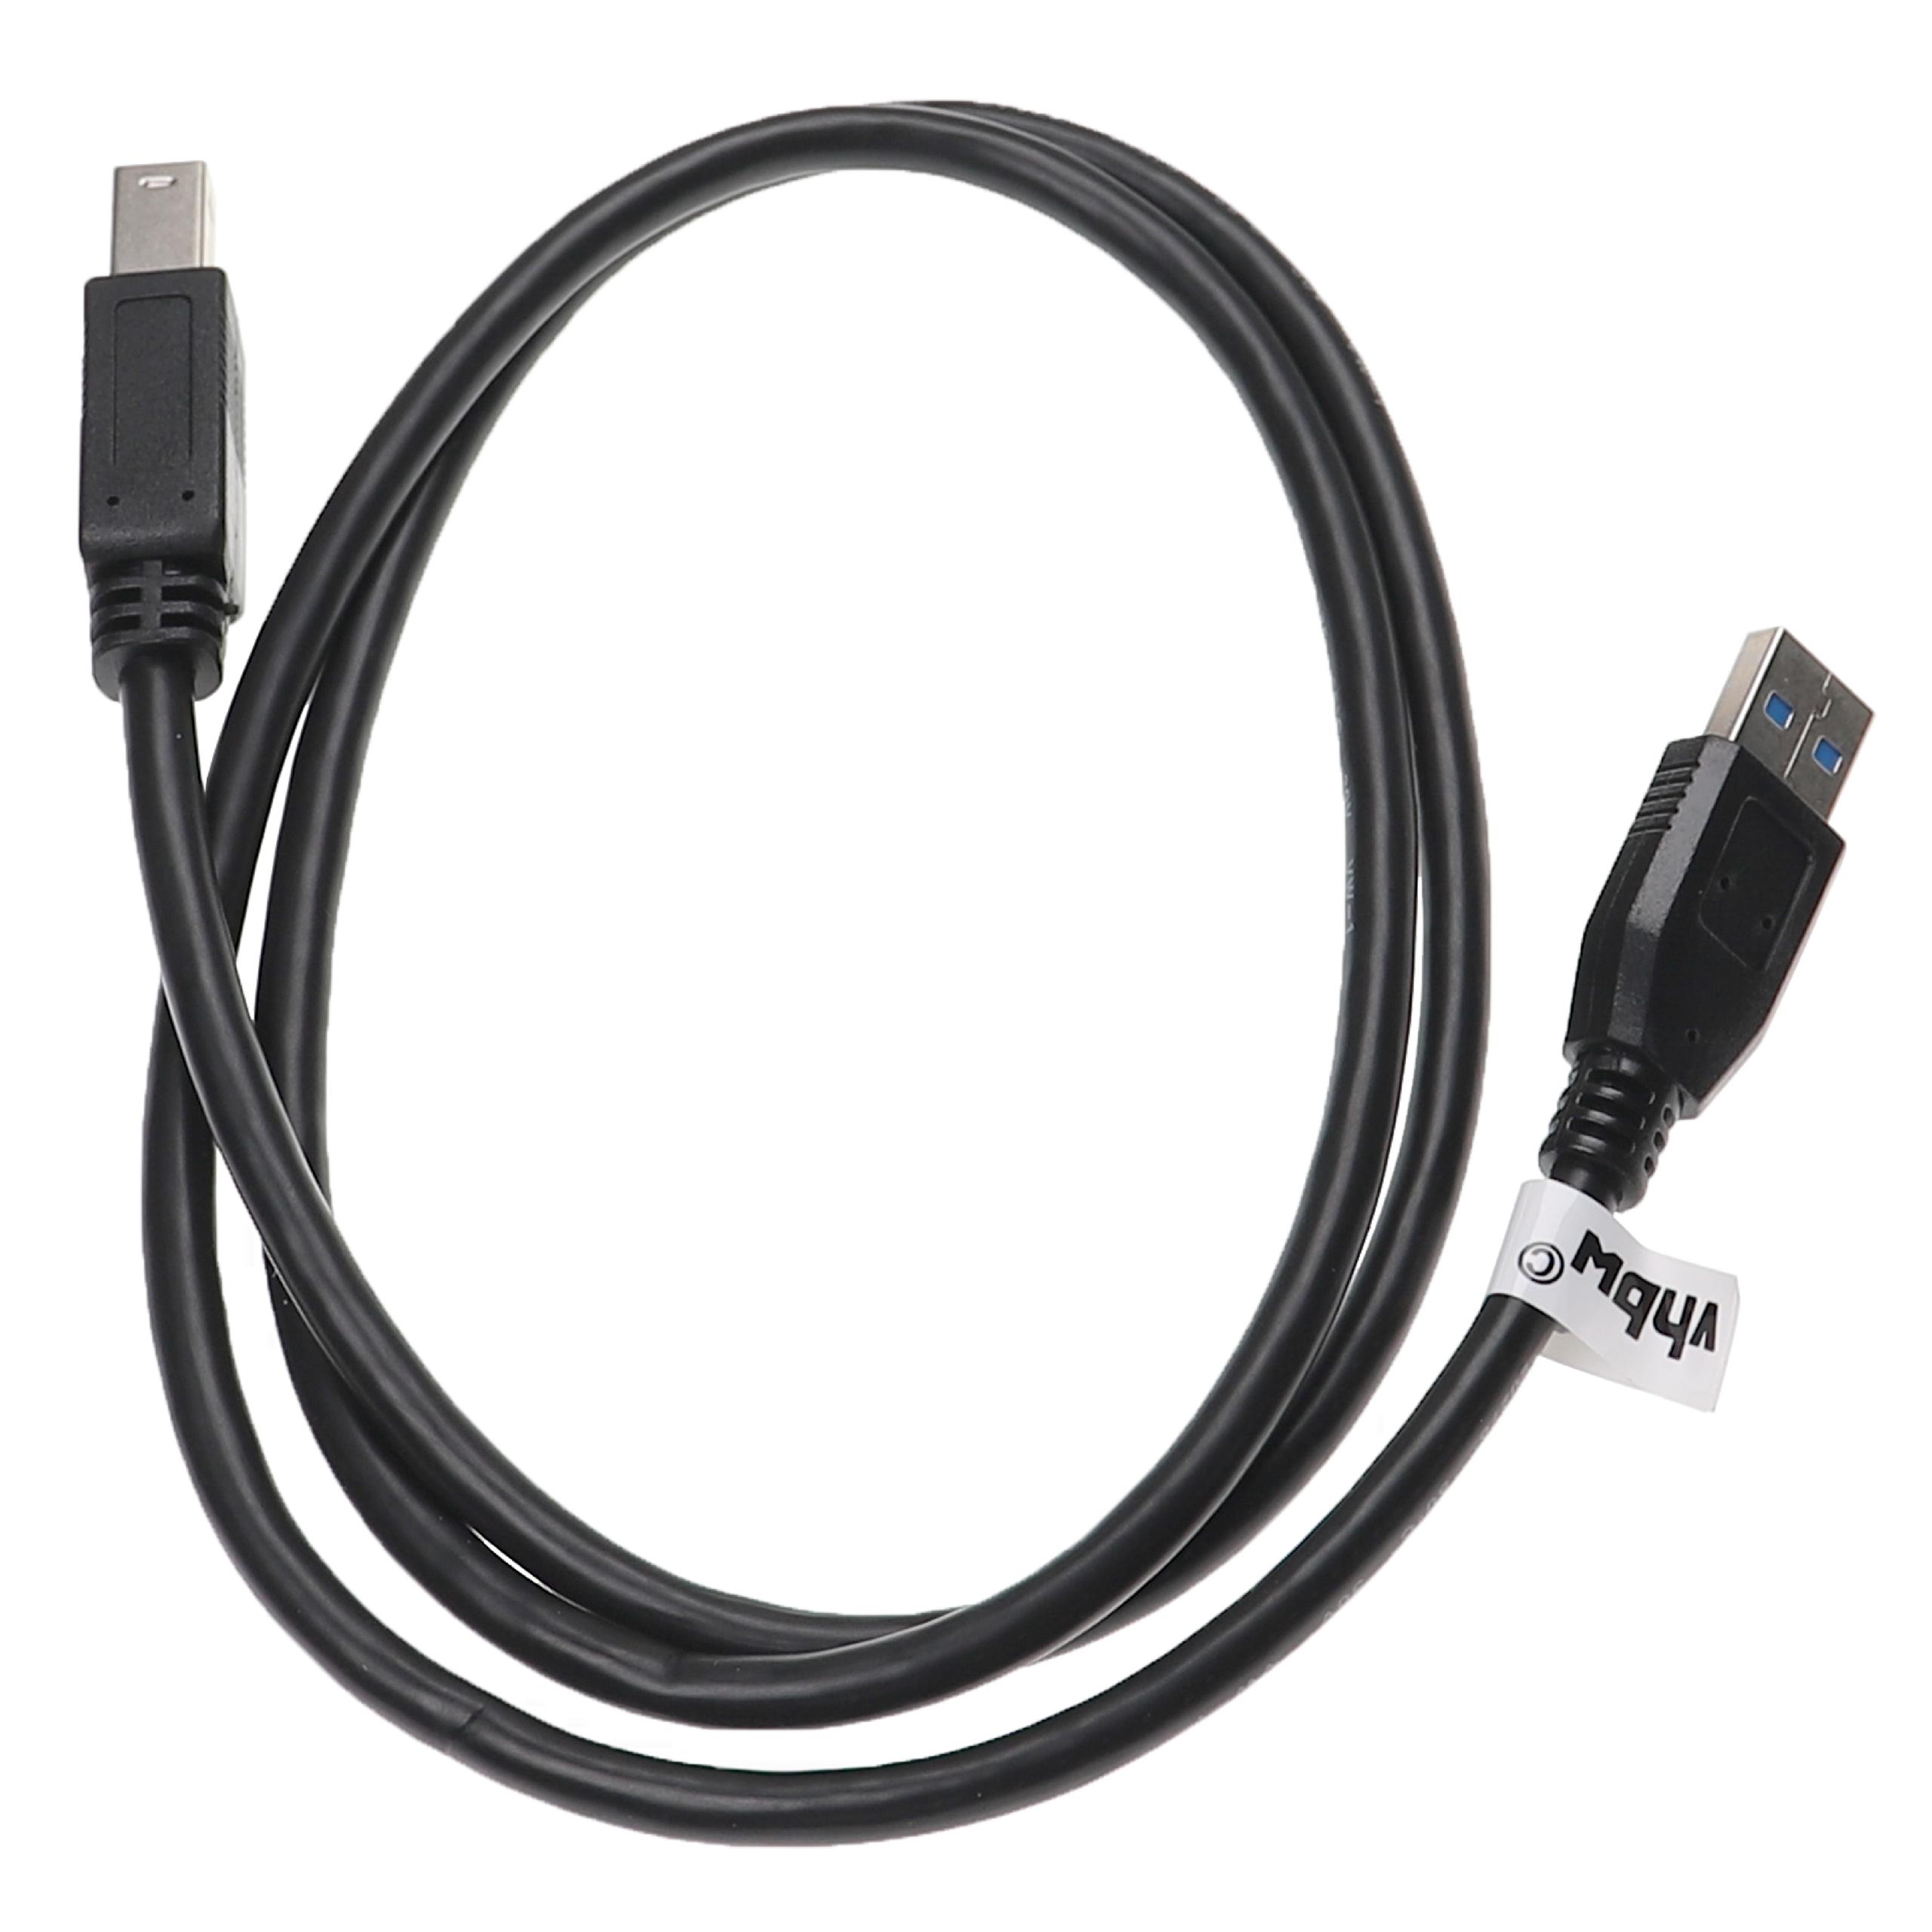 Vhbw Câble USB 3.0 A vers USB 3.0 B pour disque dur, imprimante